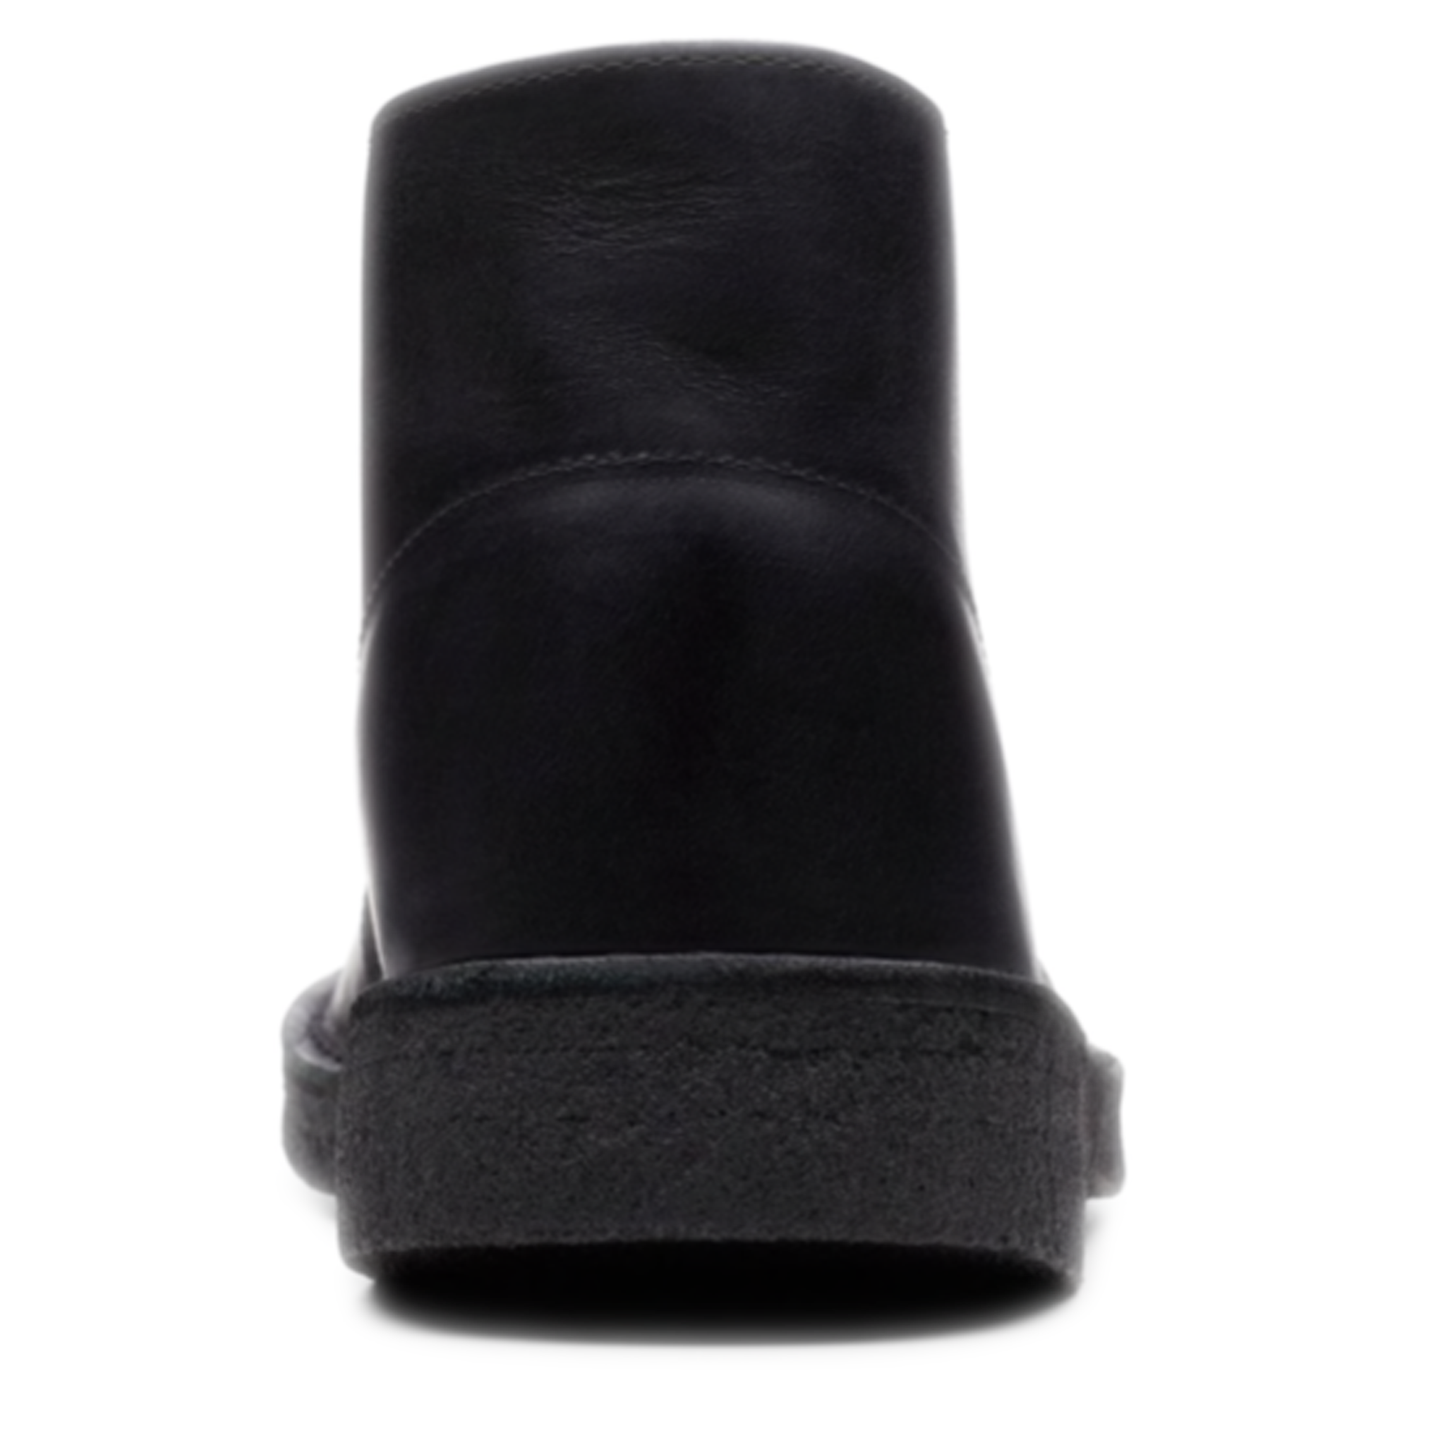 Men's Clarks Desert Boot - Black Leather